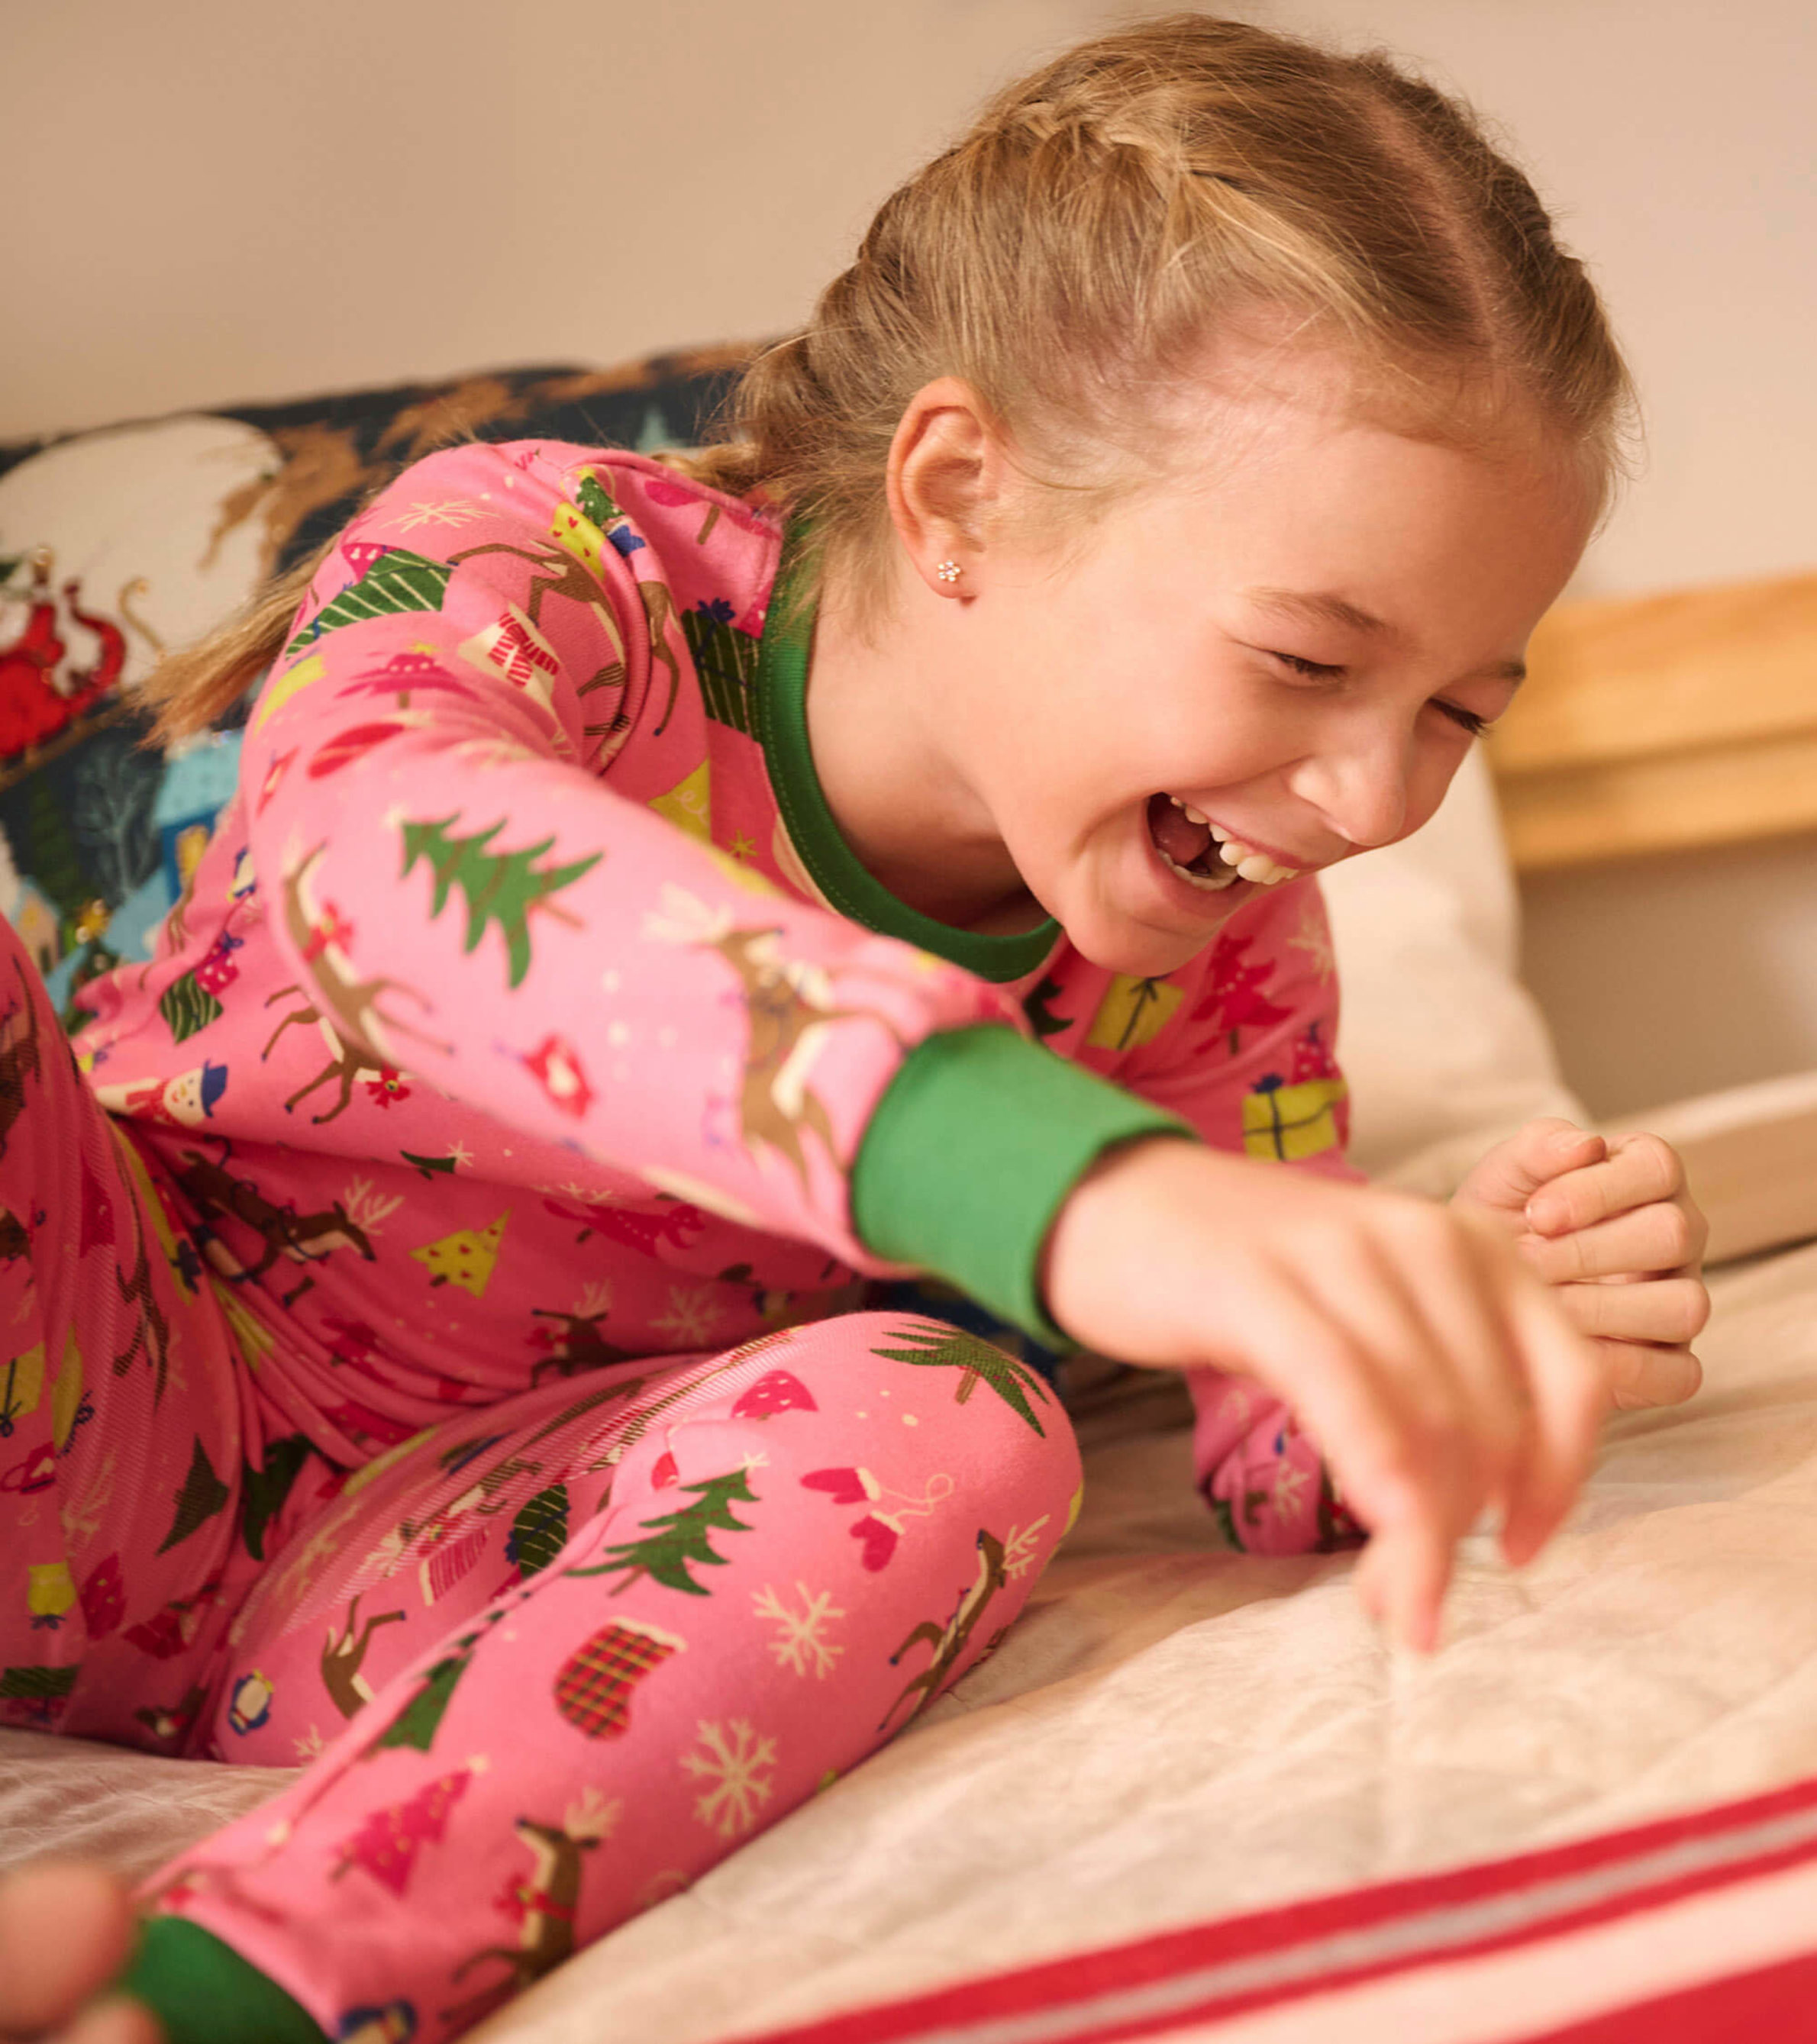 Pink Christmas Kids Organic Cotton Pajama Set - Hatley US